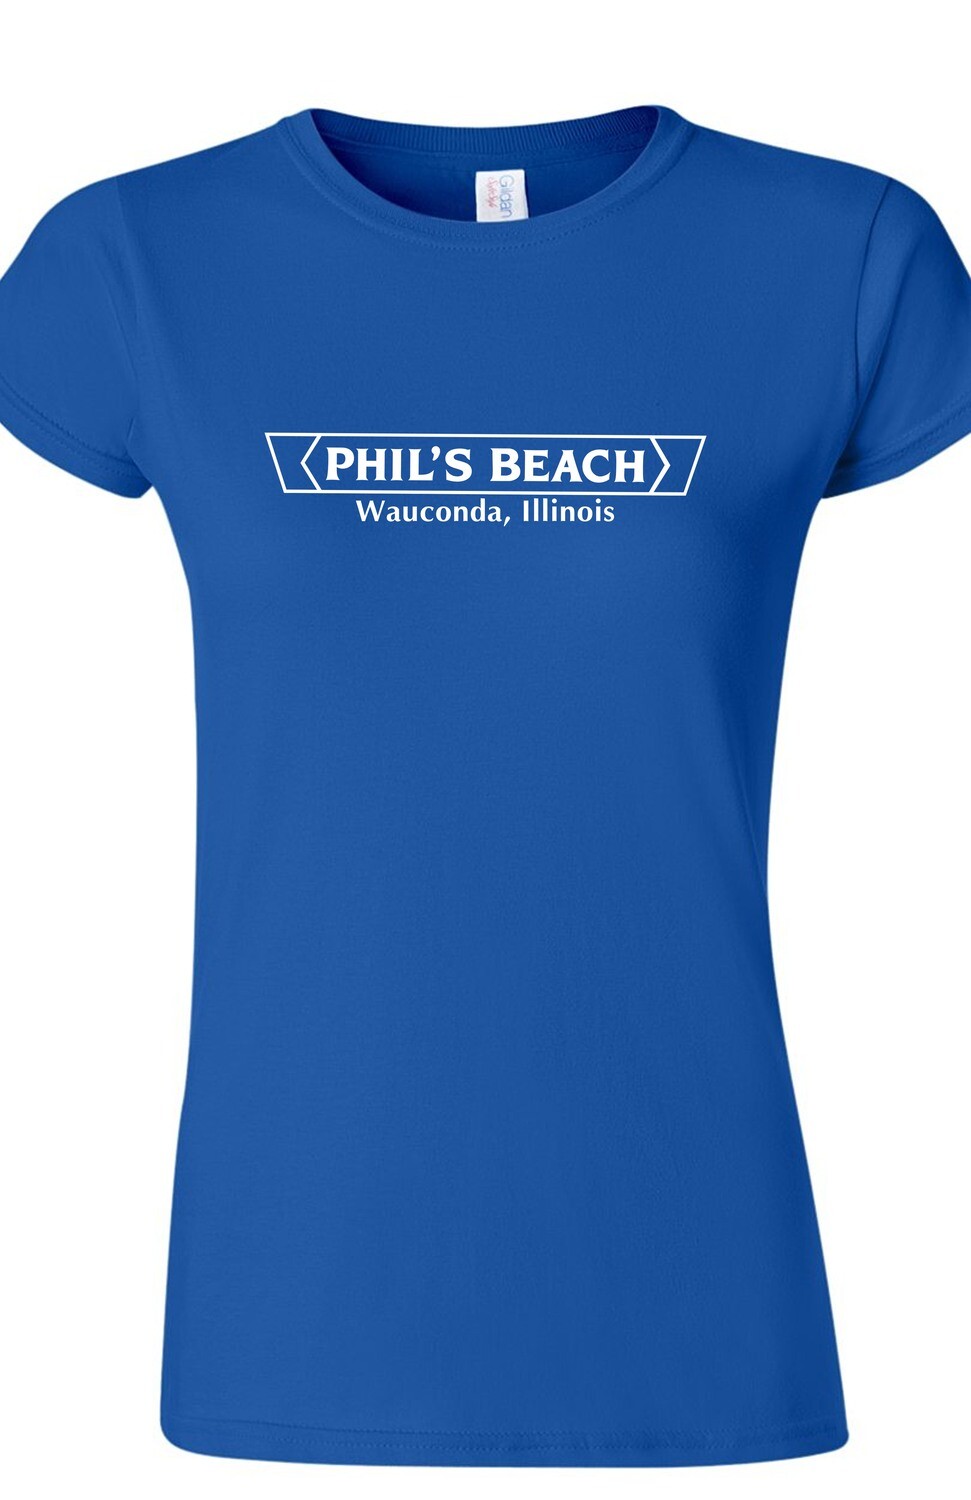 Phil's Beach Women's T-shirt - Blue